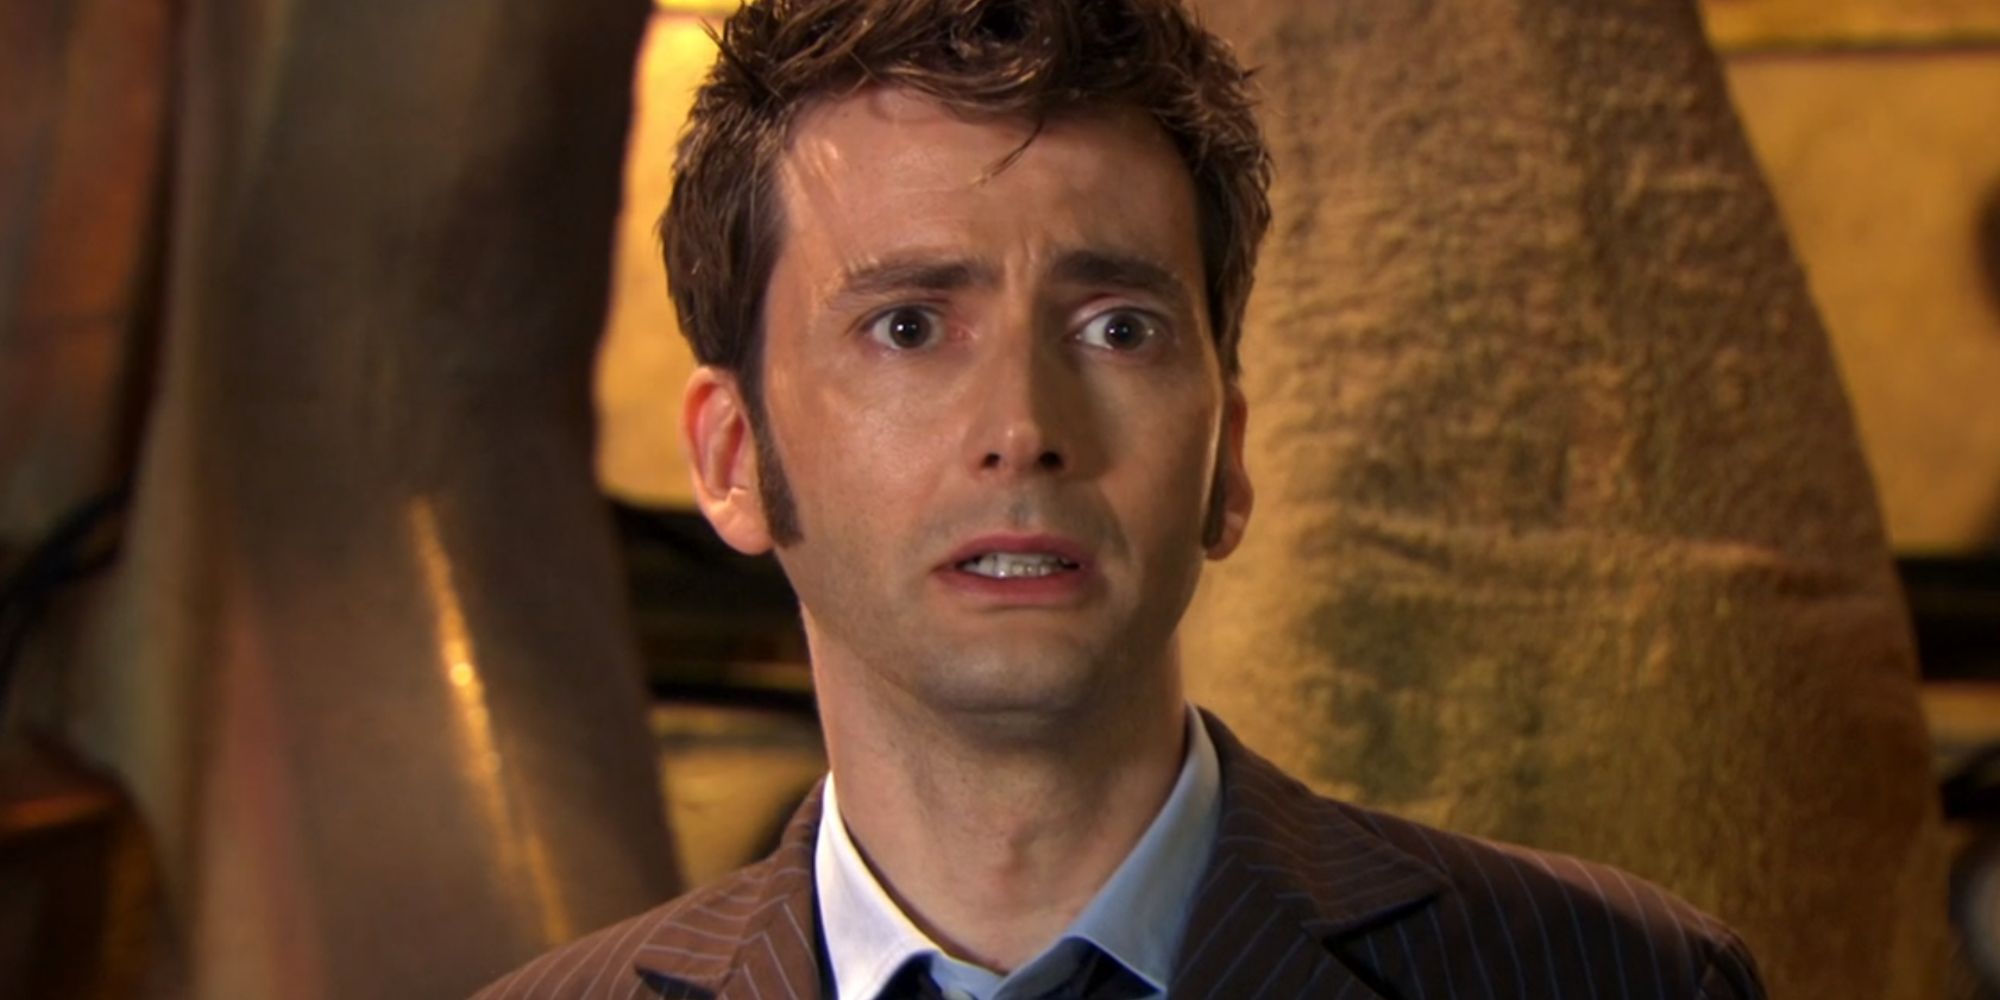 Episódio de Doctor Who, The End of Time, com David Tennant como o Décimo Doctor antes de se regenerar